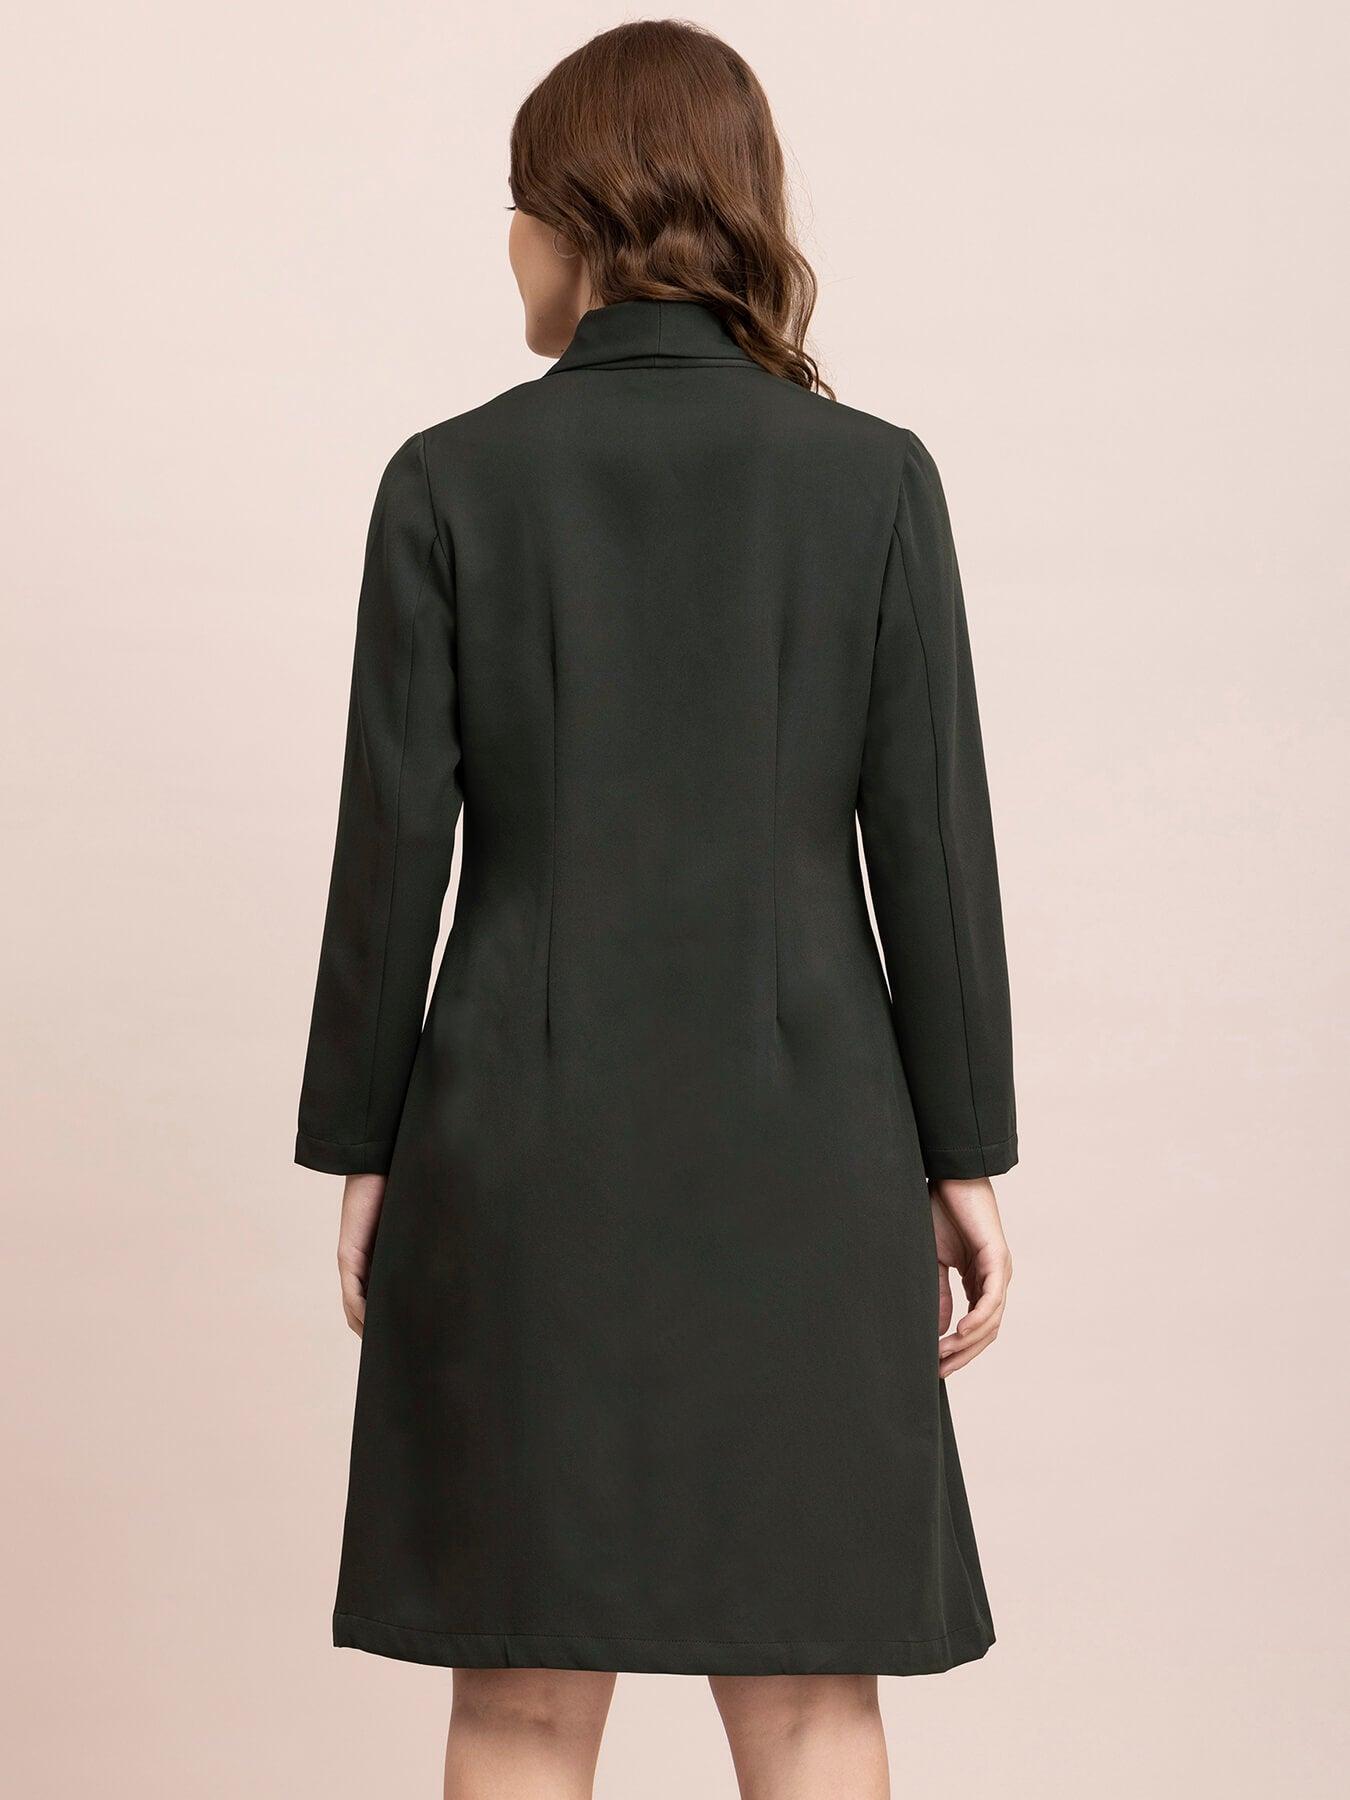 A Line Blazer Dress - Olive| Formal Dresses